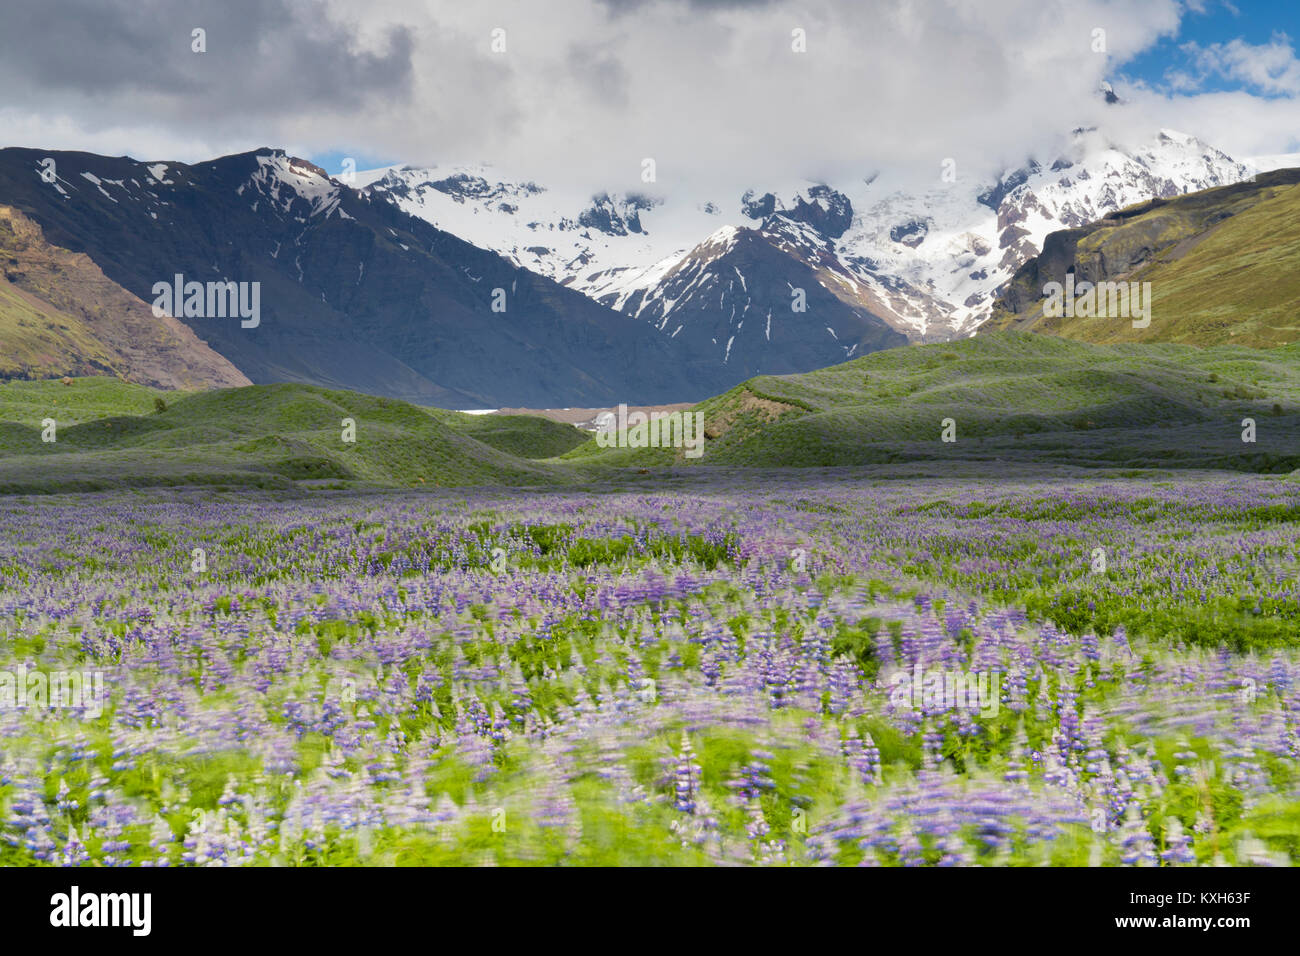 Paisaje islandés, campo de Nootka Lupine con montañas nevadas en el fondo Foto de stock